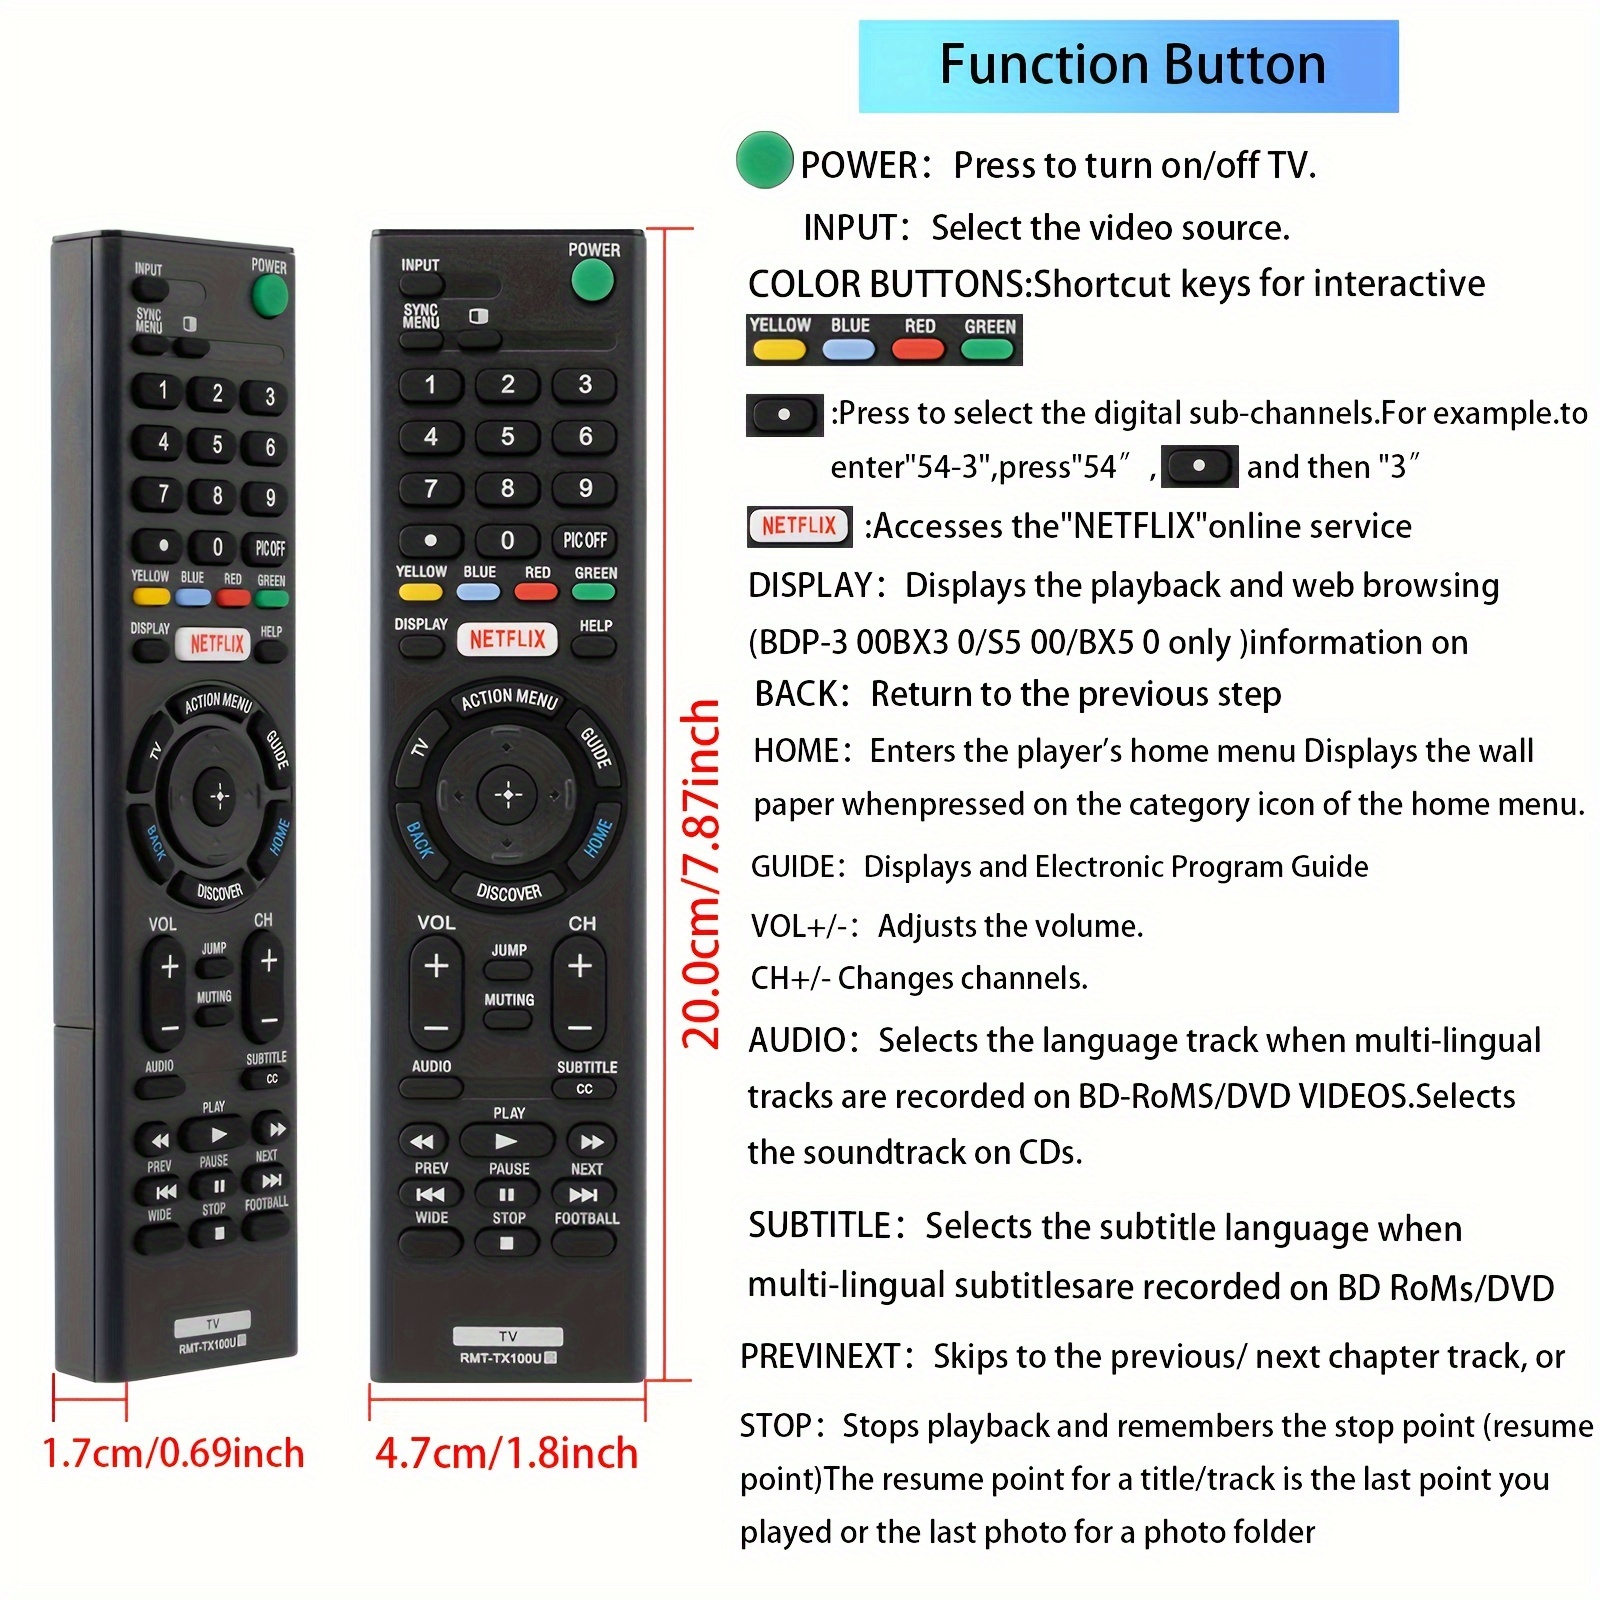 Control Remoto Universal De Tv Fulltotal 005-1001 Smart Tv